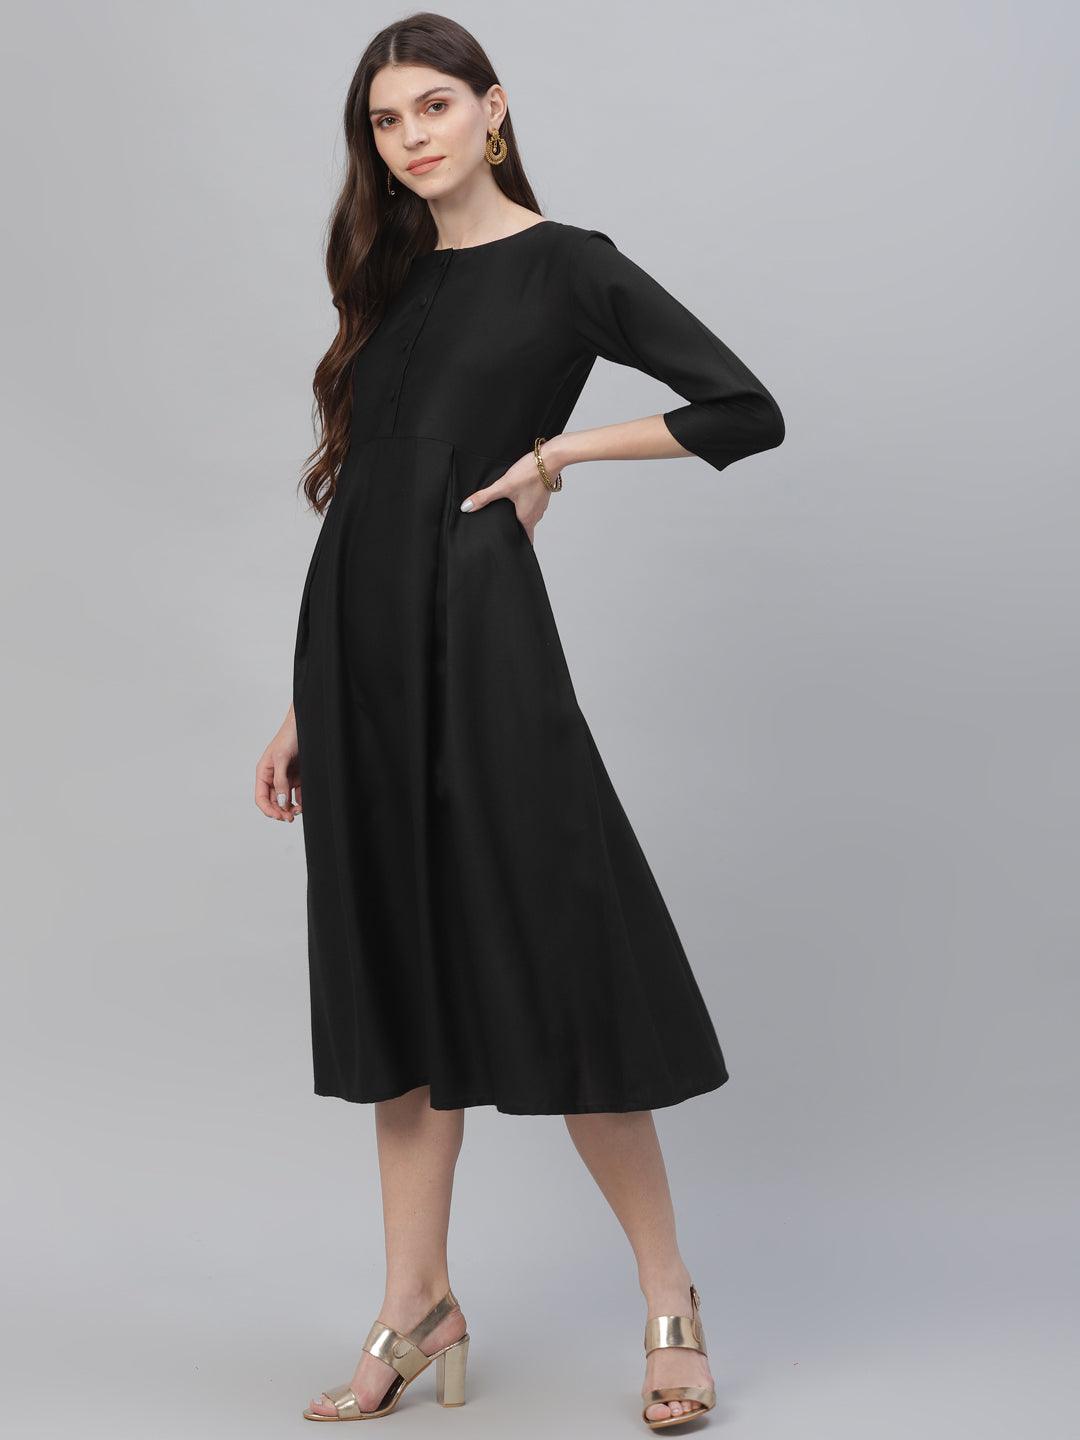 Black Solid Cotton Dress - Libas